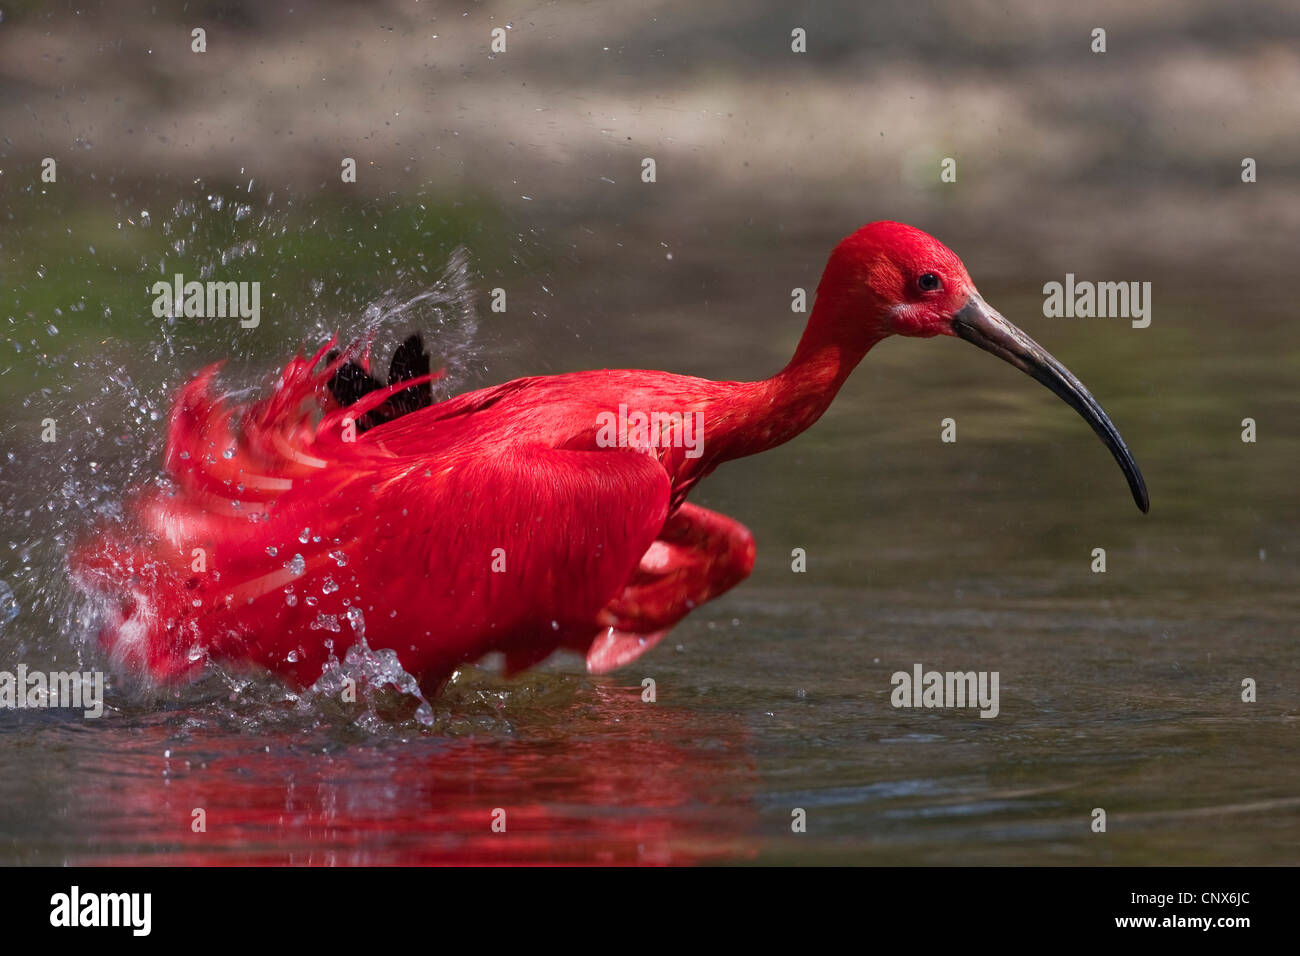 Ibis rouge (Eudocimus ruber), debout dans l'eau les ailes battantes Banque D'Images